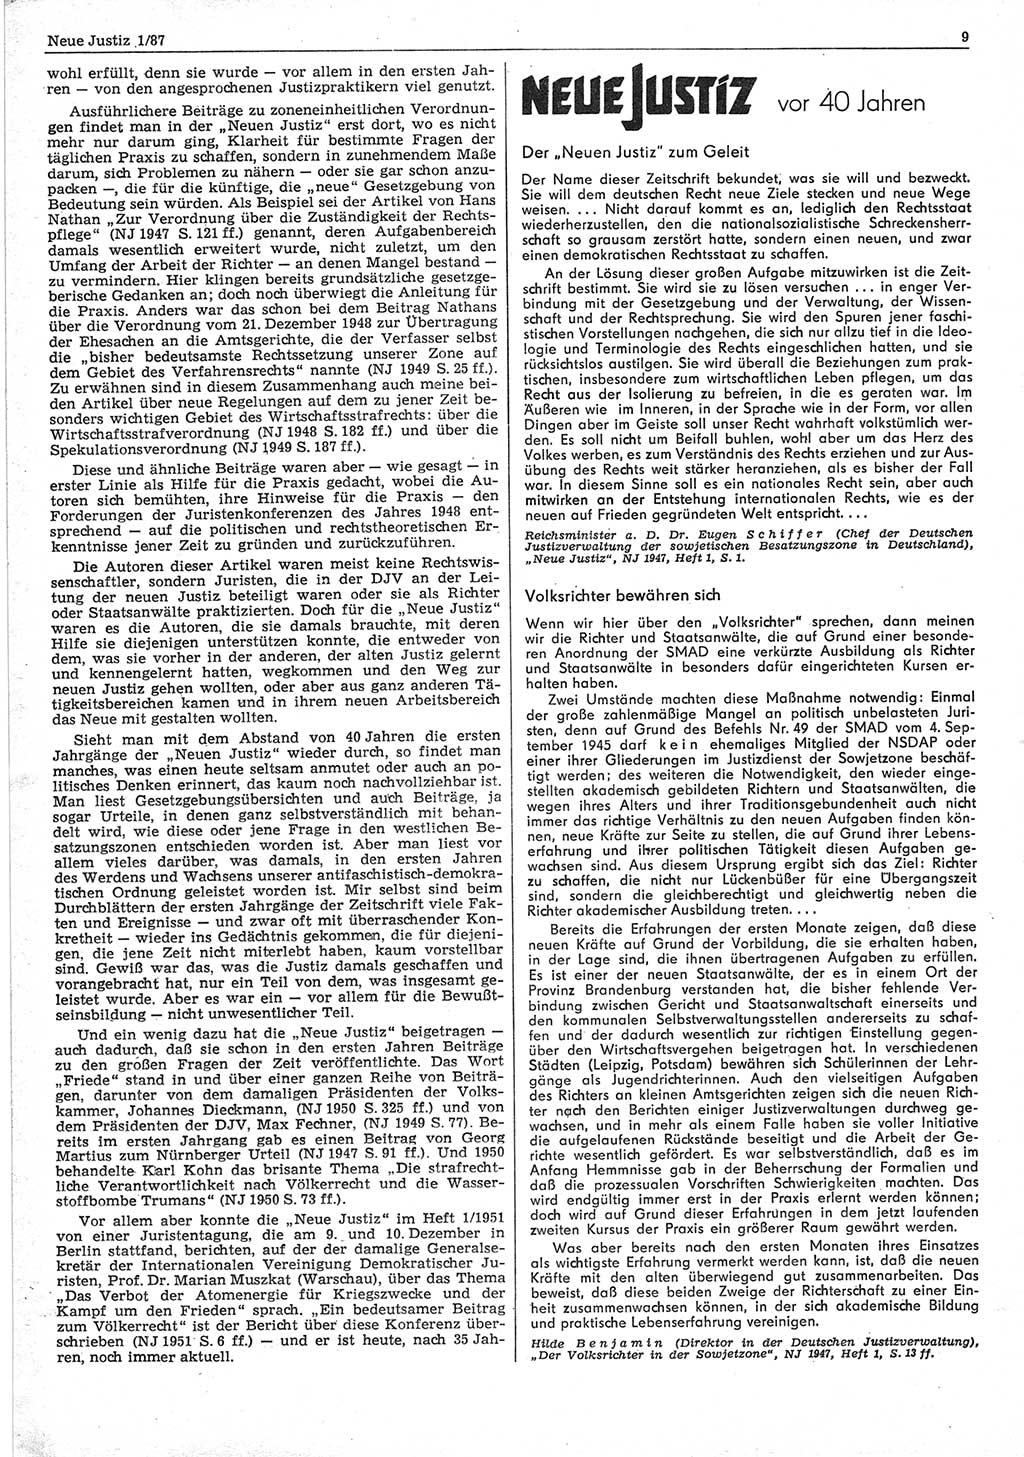 Neue Justiz (NJ), Zeitschrift für sozialistisches Recht und Gesetzlichkeit [Deutsche Demokratische Republik (DDR)], 41. Jahrgang 1987, Seite 9 (NJ DDR 1987, S. 9)